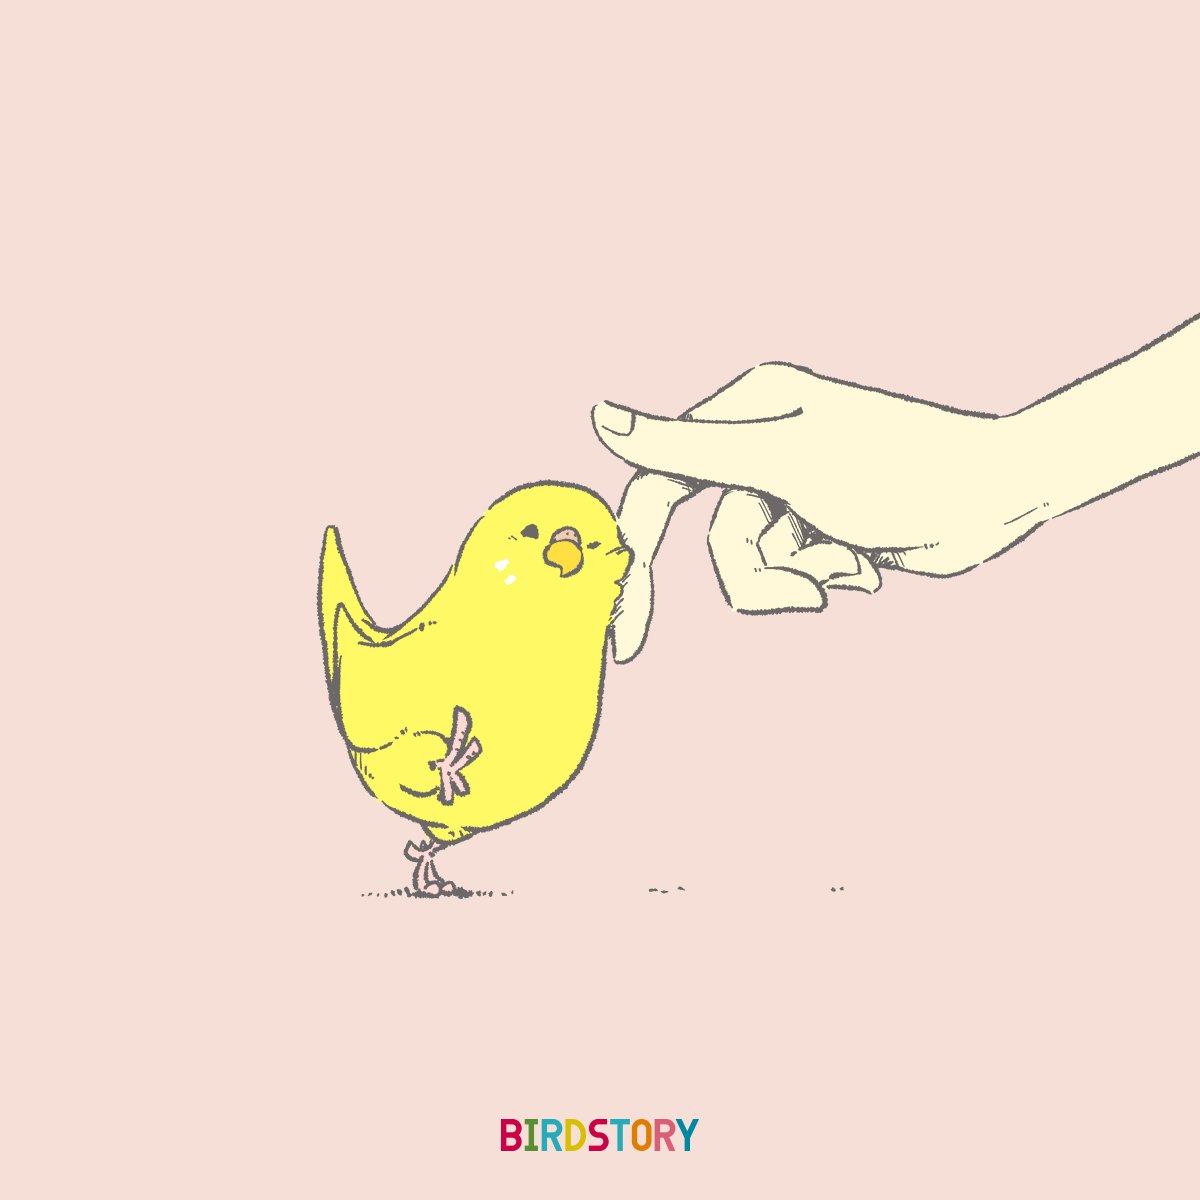 「おはようございます。
本日は3月2日、ミニの語呂合わせからミニの日?
「小さいも」|BIRDSTORYのイラスト